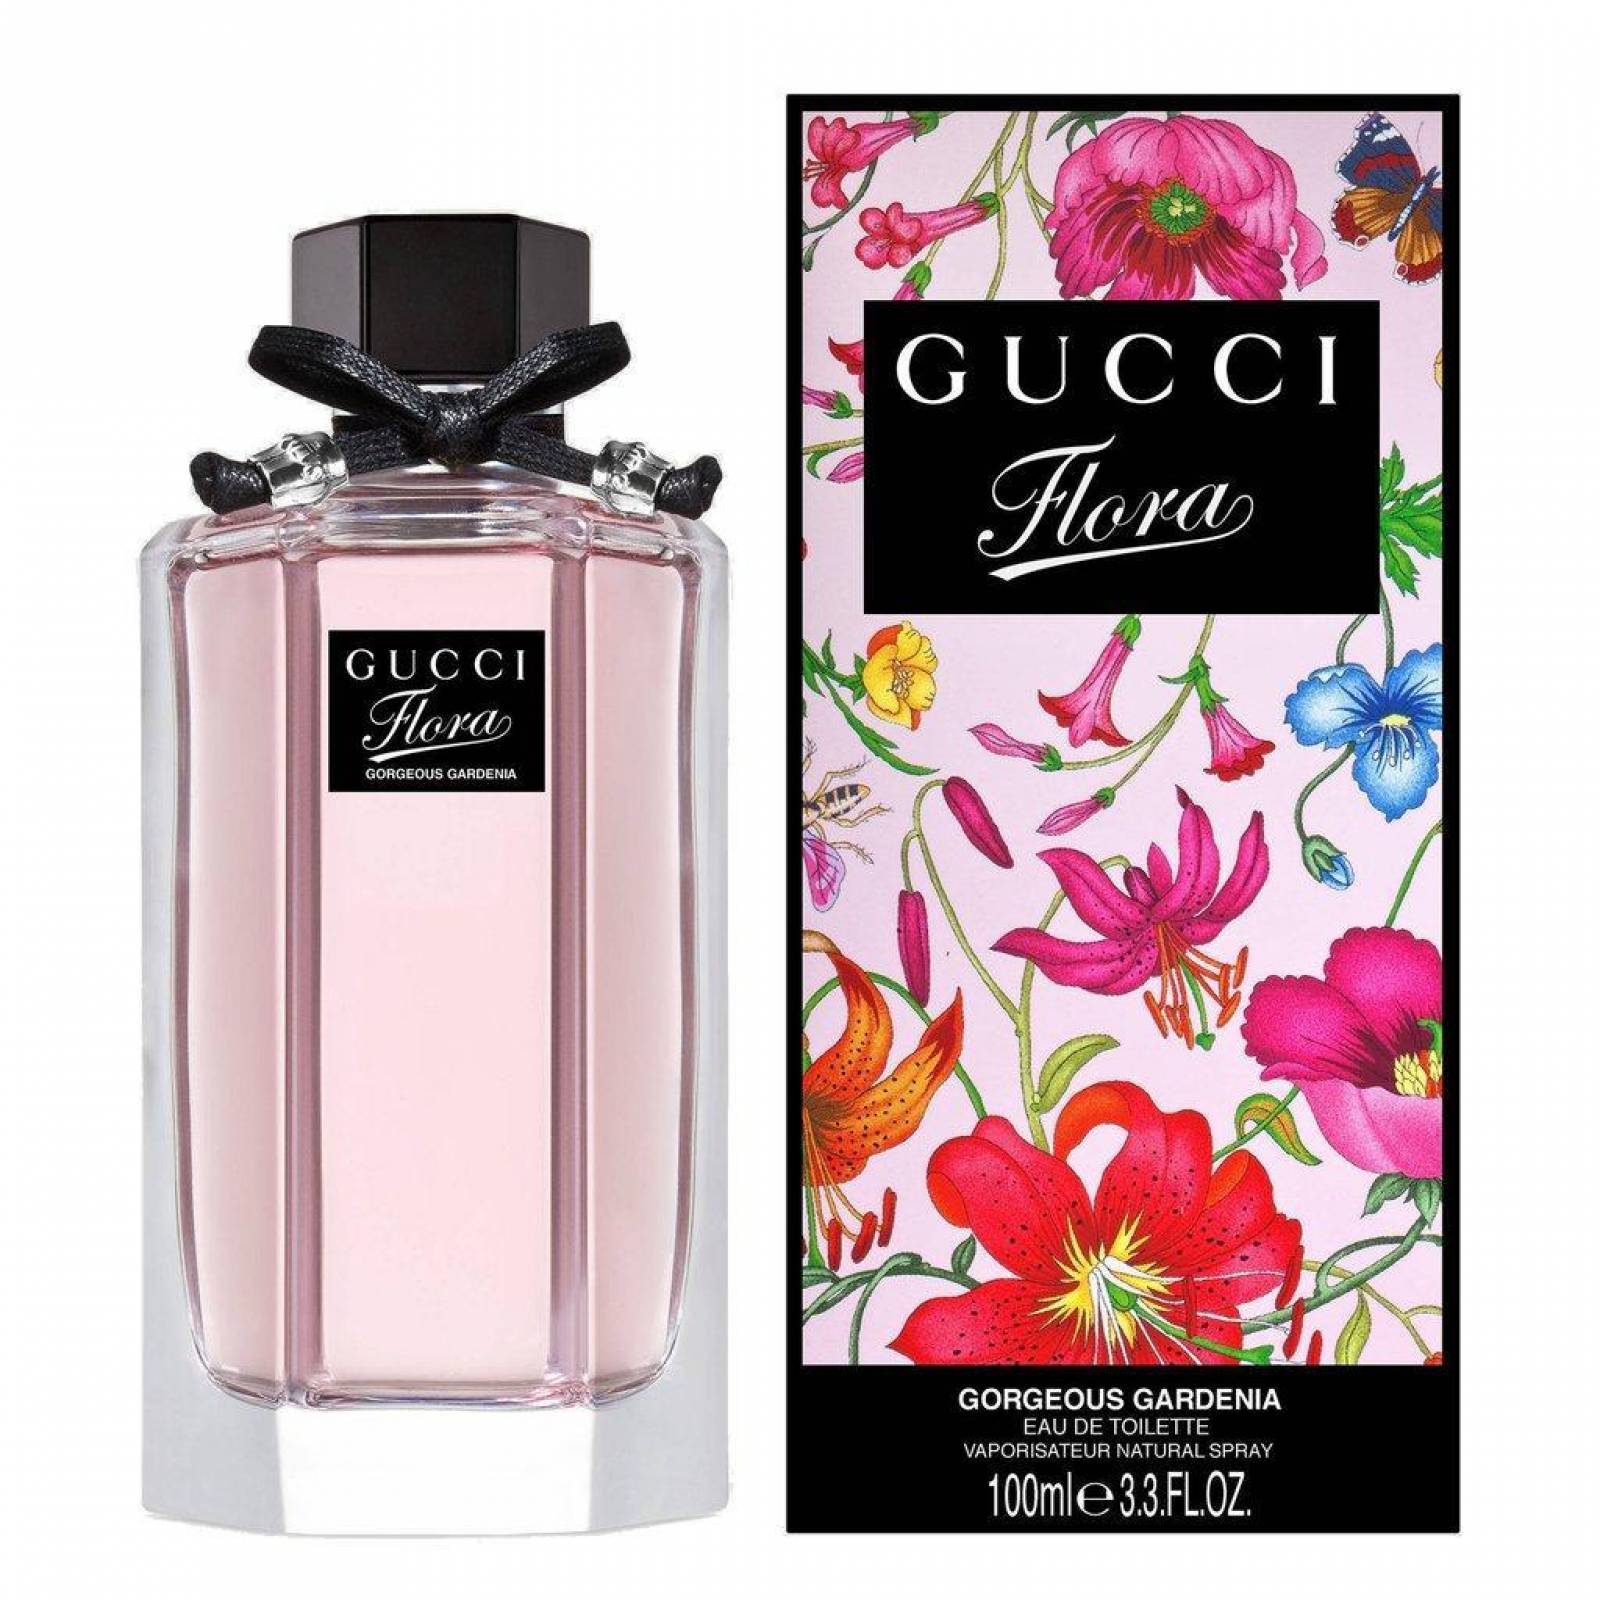 Perfume flora gorgeous gardenia de gucci edt 100 ml - Sears